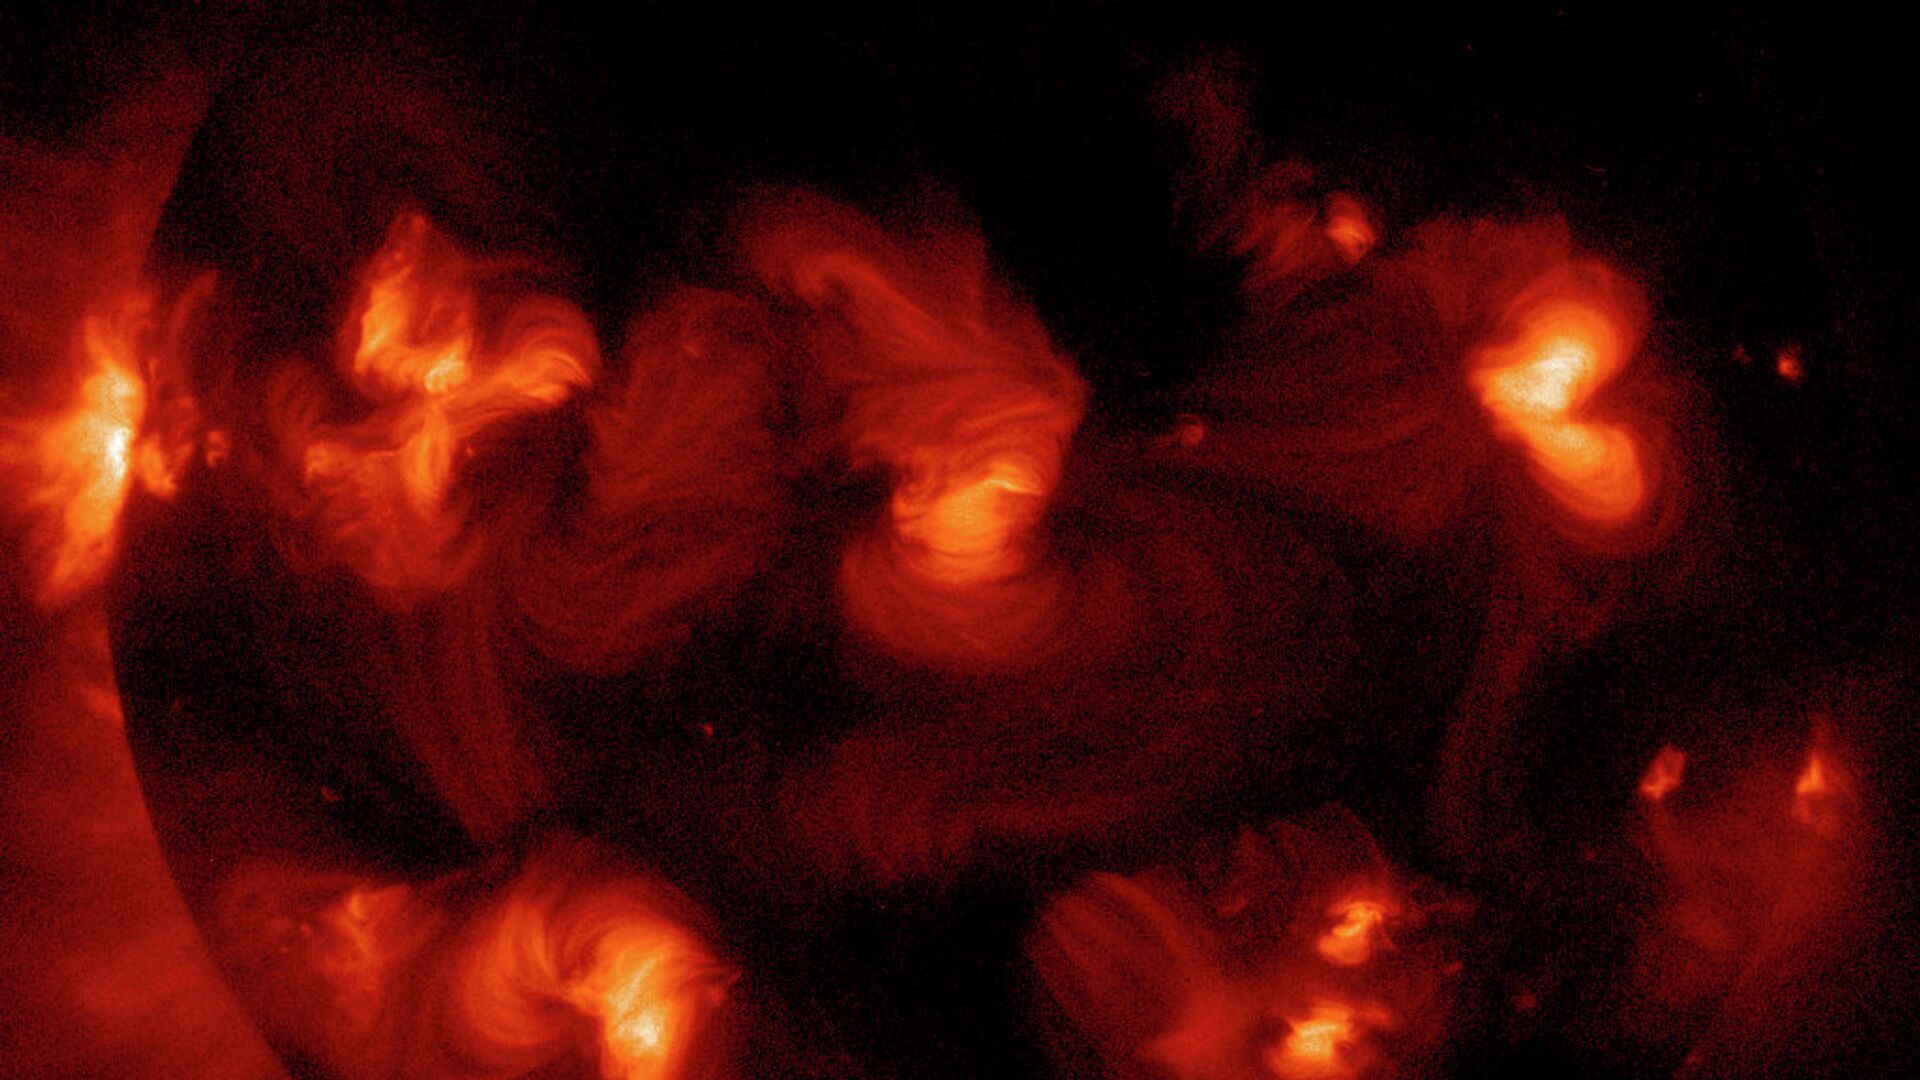 Снимок необычной солнечной вспышки, которая на фото запечатлелась в форме сердца - РИА Новости, 1920, 12.07.2020